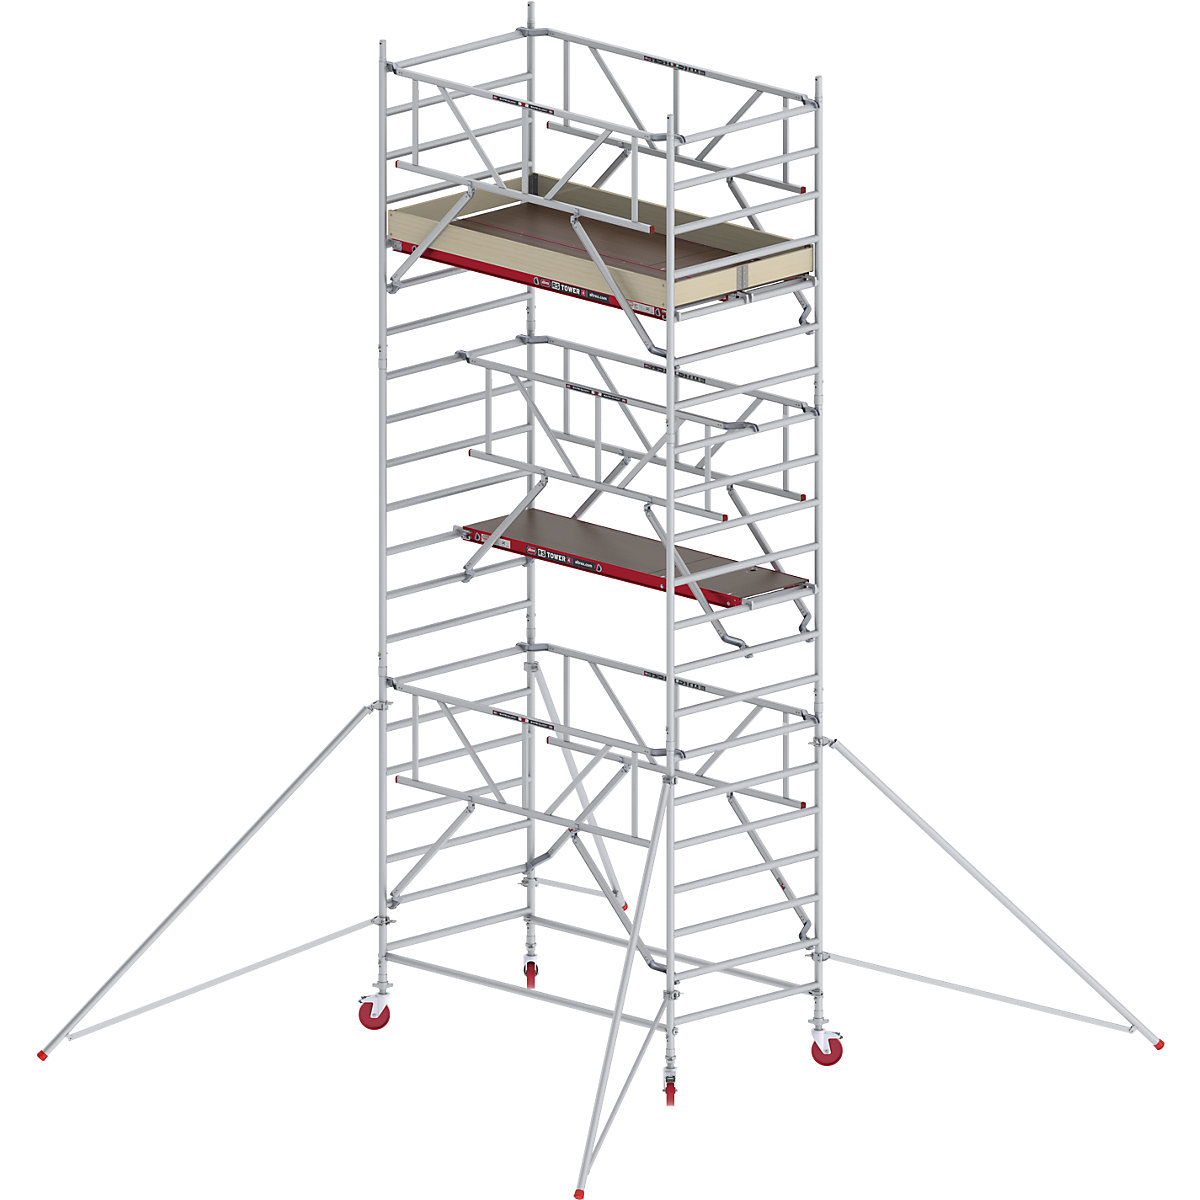 Schelă mobilă RS TOWER 42 lată cu Safe-Quick® – Altrex, platformă din lemn, lungime 2,45 m, înălțime de lucru 7,20 m-7